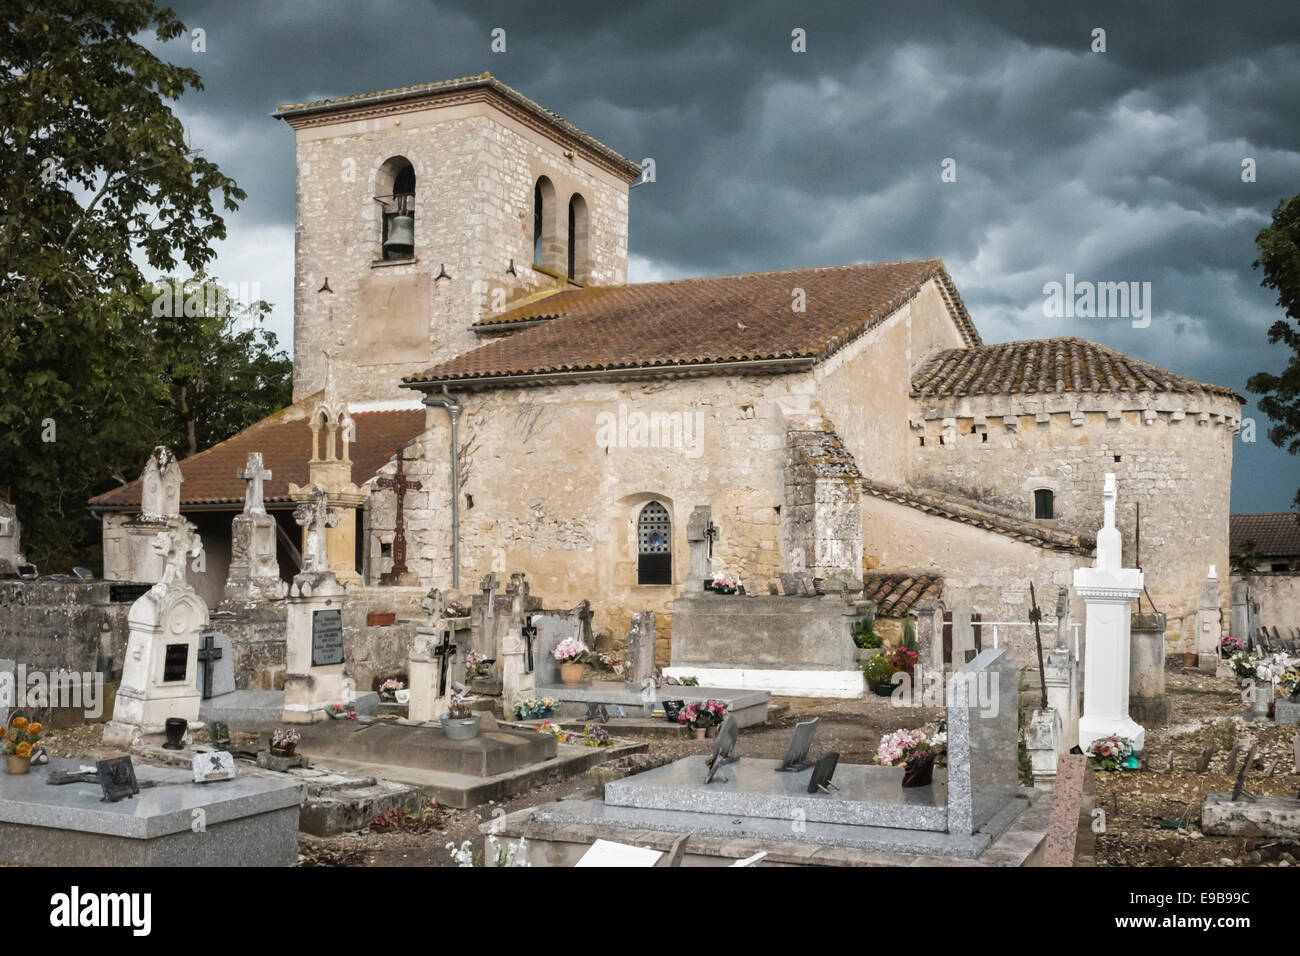 Sturm über die Kirche in Saint-amans-du-Pech, eine französische Gemeinde im Département Tarn-et-Garonne, midi-pyrénées Region im Süden Frankreichs Stockfoto